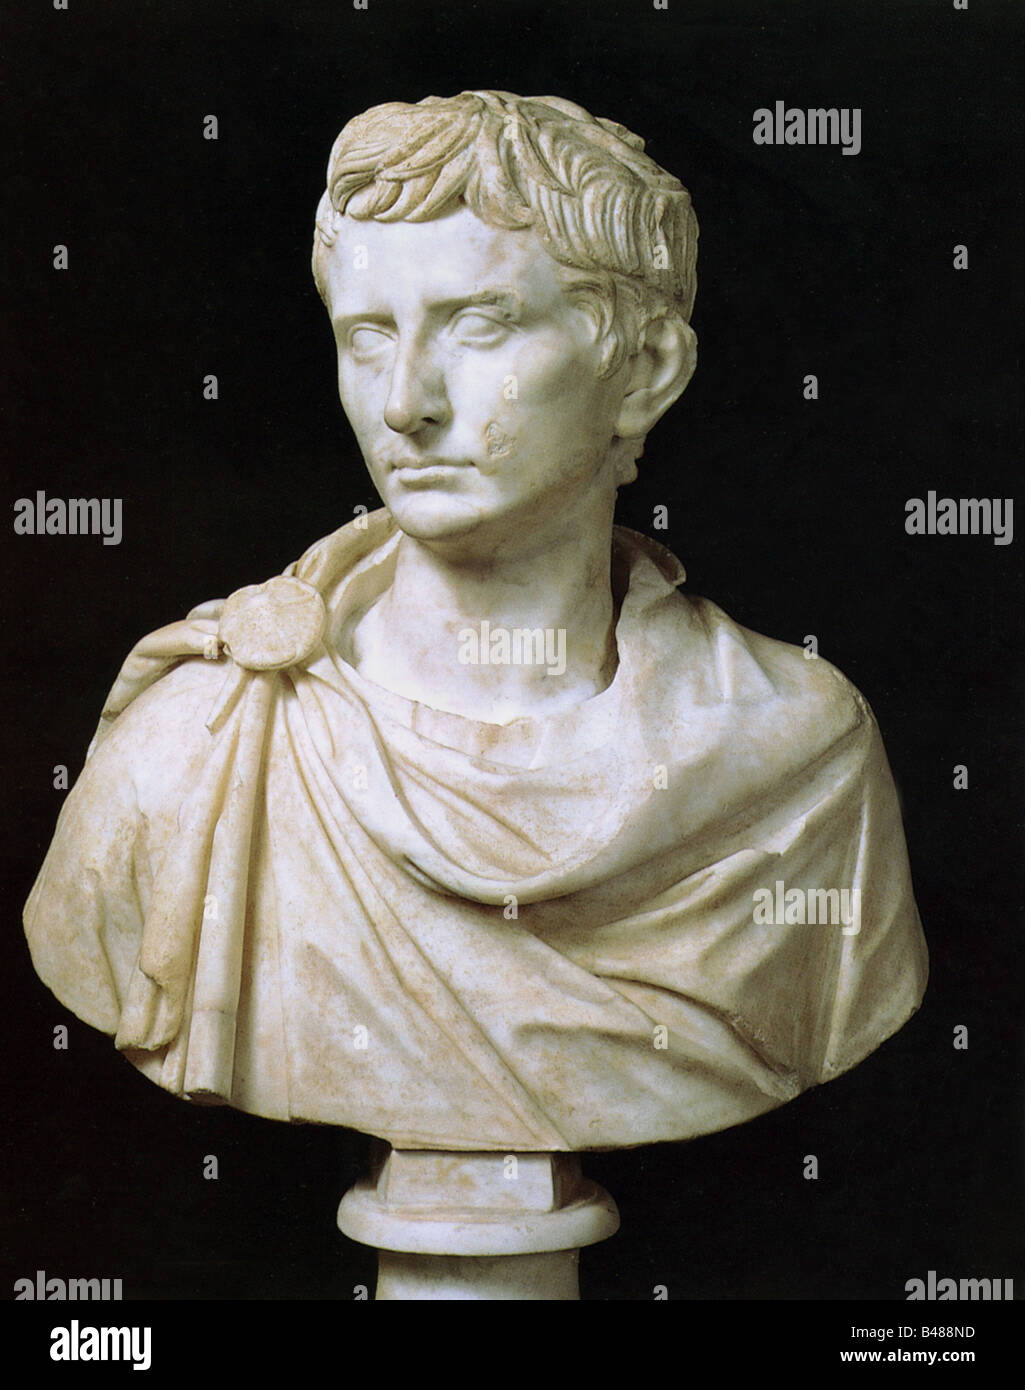 Augustus (Imperator Caesar Augustus), 23.9.63 v. Chr. - 19.8.14 n. Chr., römischer Kaiser 13.1.27 v. Chr. - 19.8.14 n. Chr., Porträt, Büste, Marmor, 36 cm, ca. 30 v. Chr., Museo Capitolino, Rom, Stockfoto